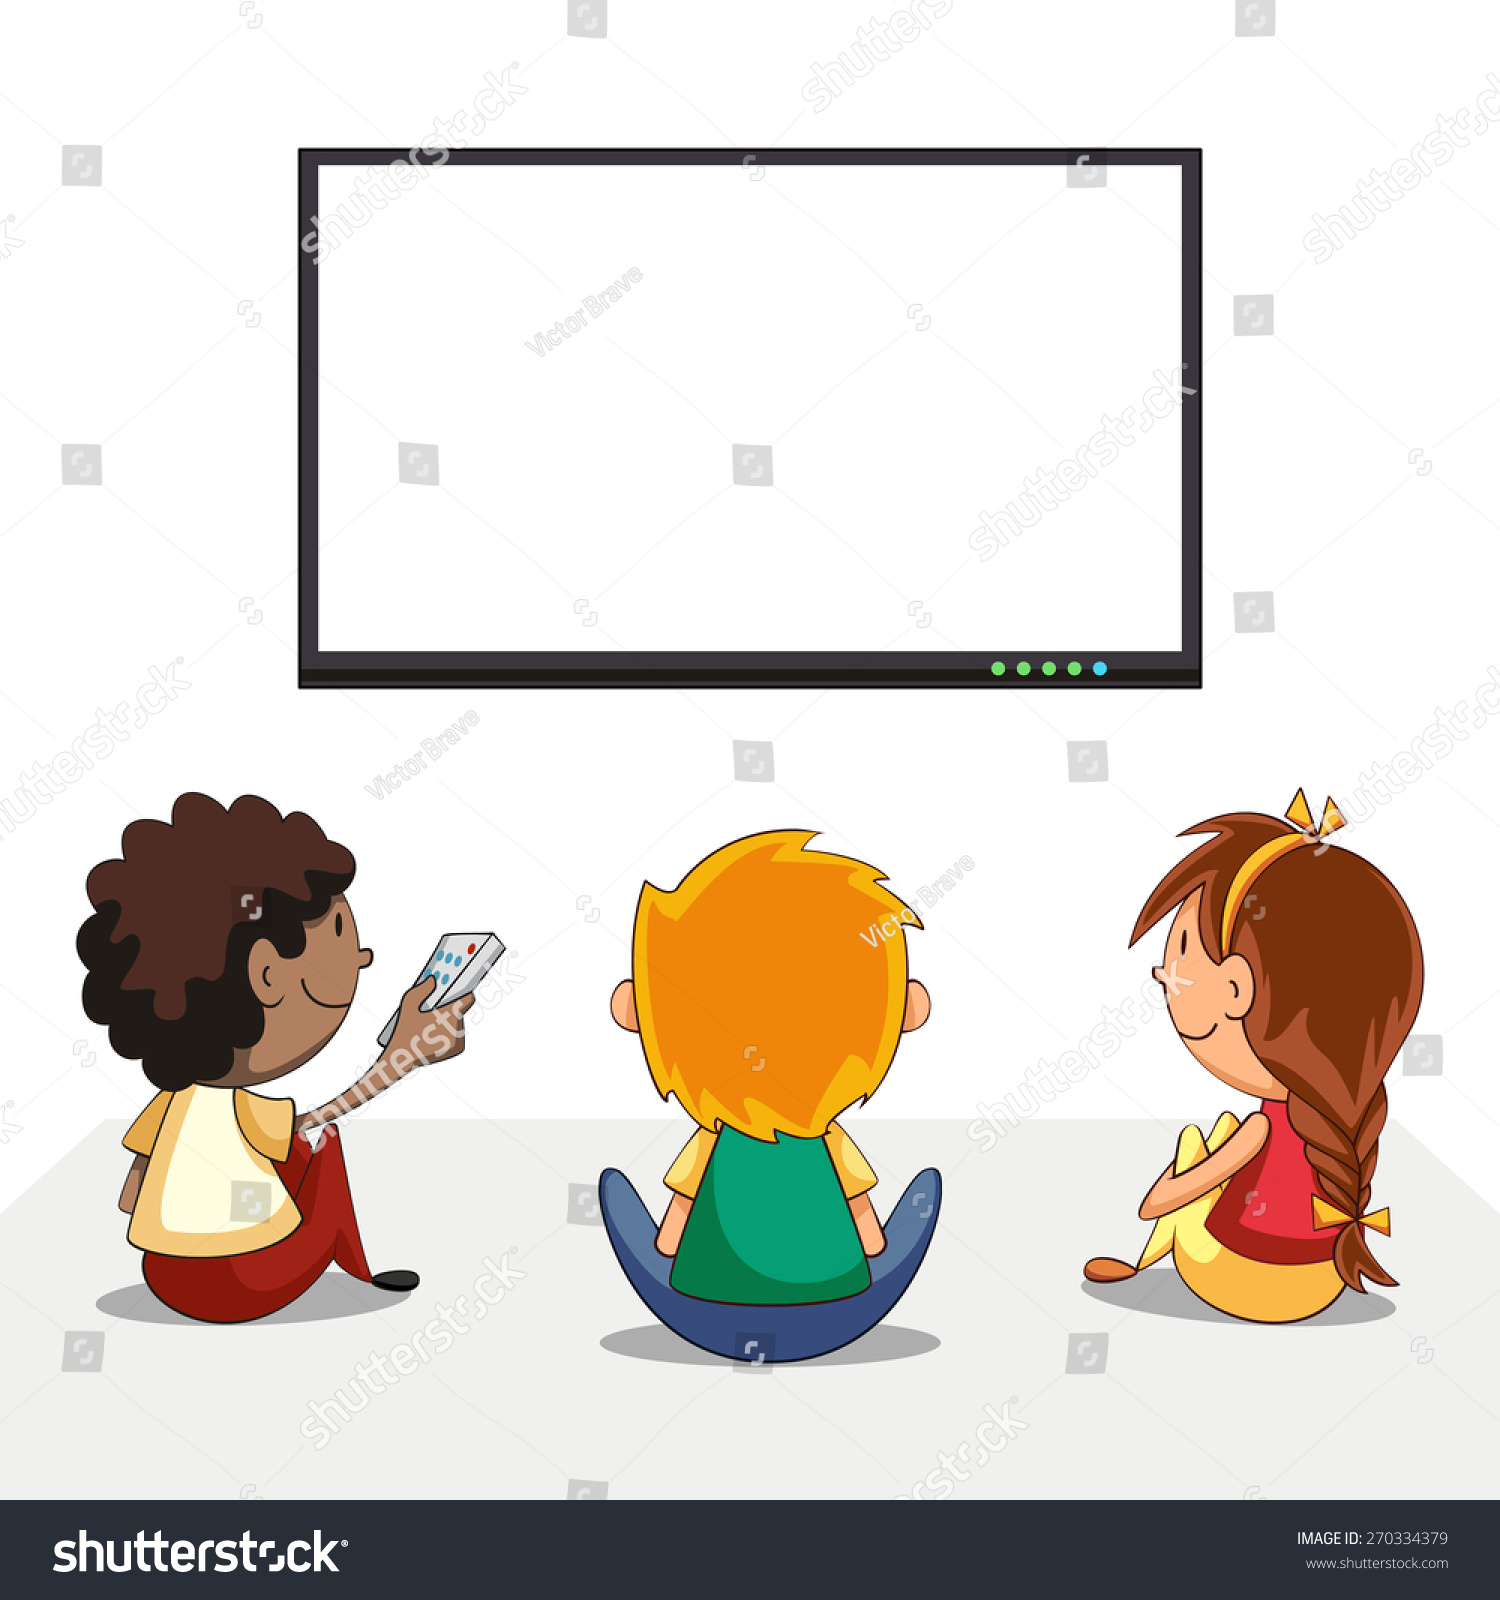 テレビを見ている子ども、空の画面、ベクターイラスト